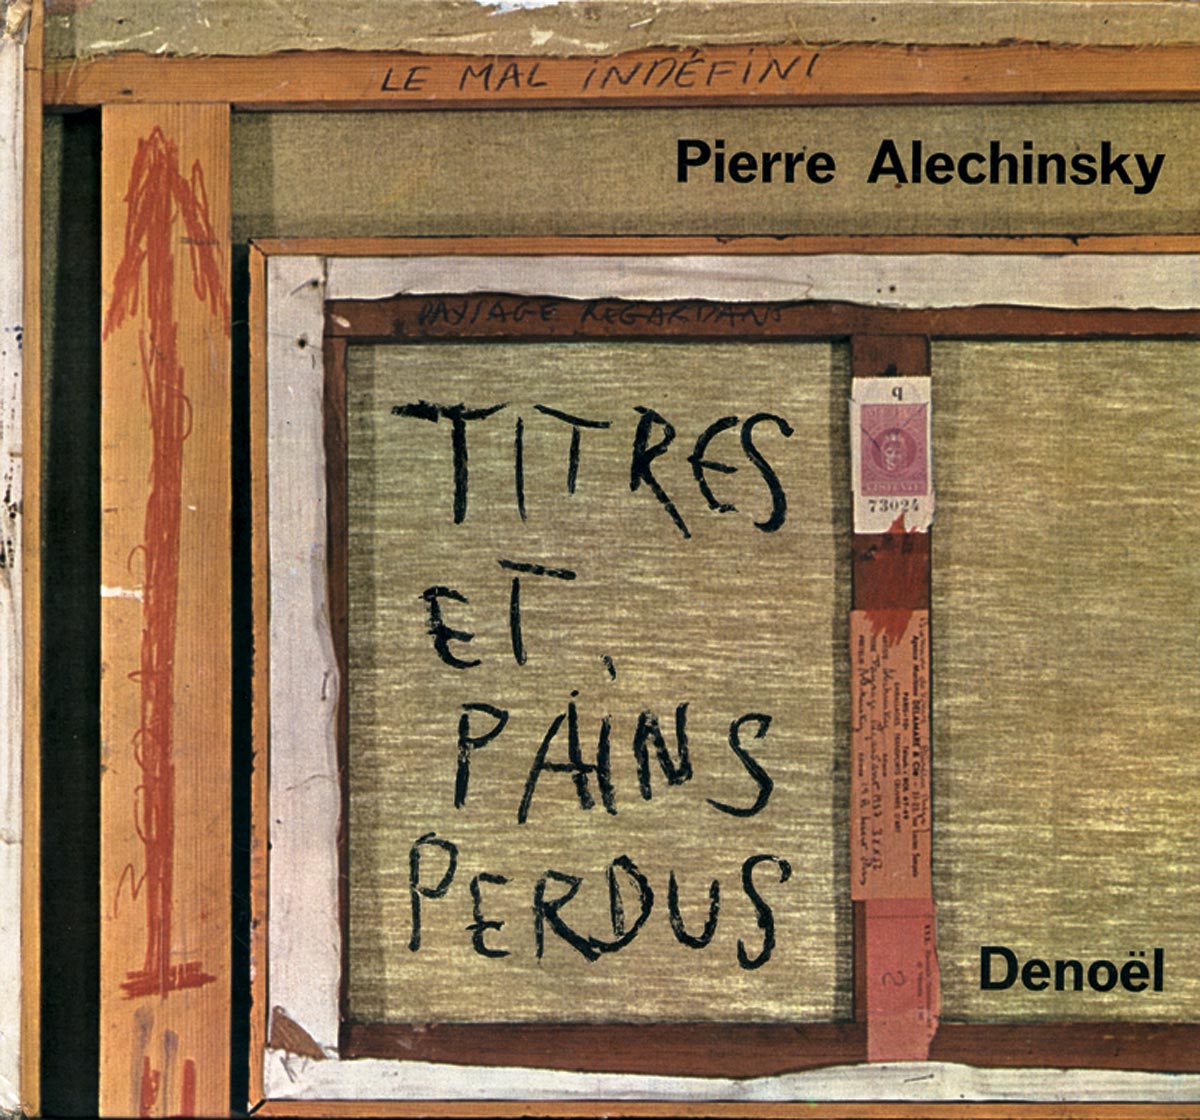 Pierre-Alechinsky-Livre-choisir-Titres et pains perdus-Denoel, Paris-1965